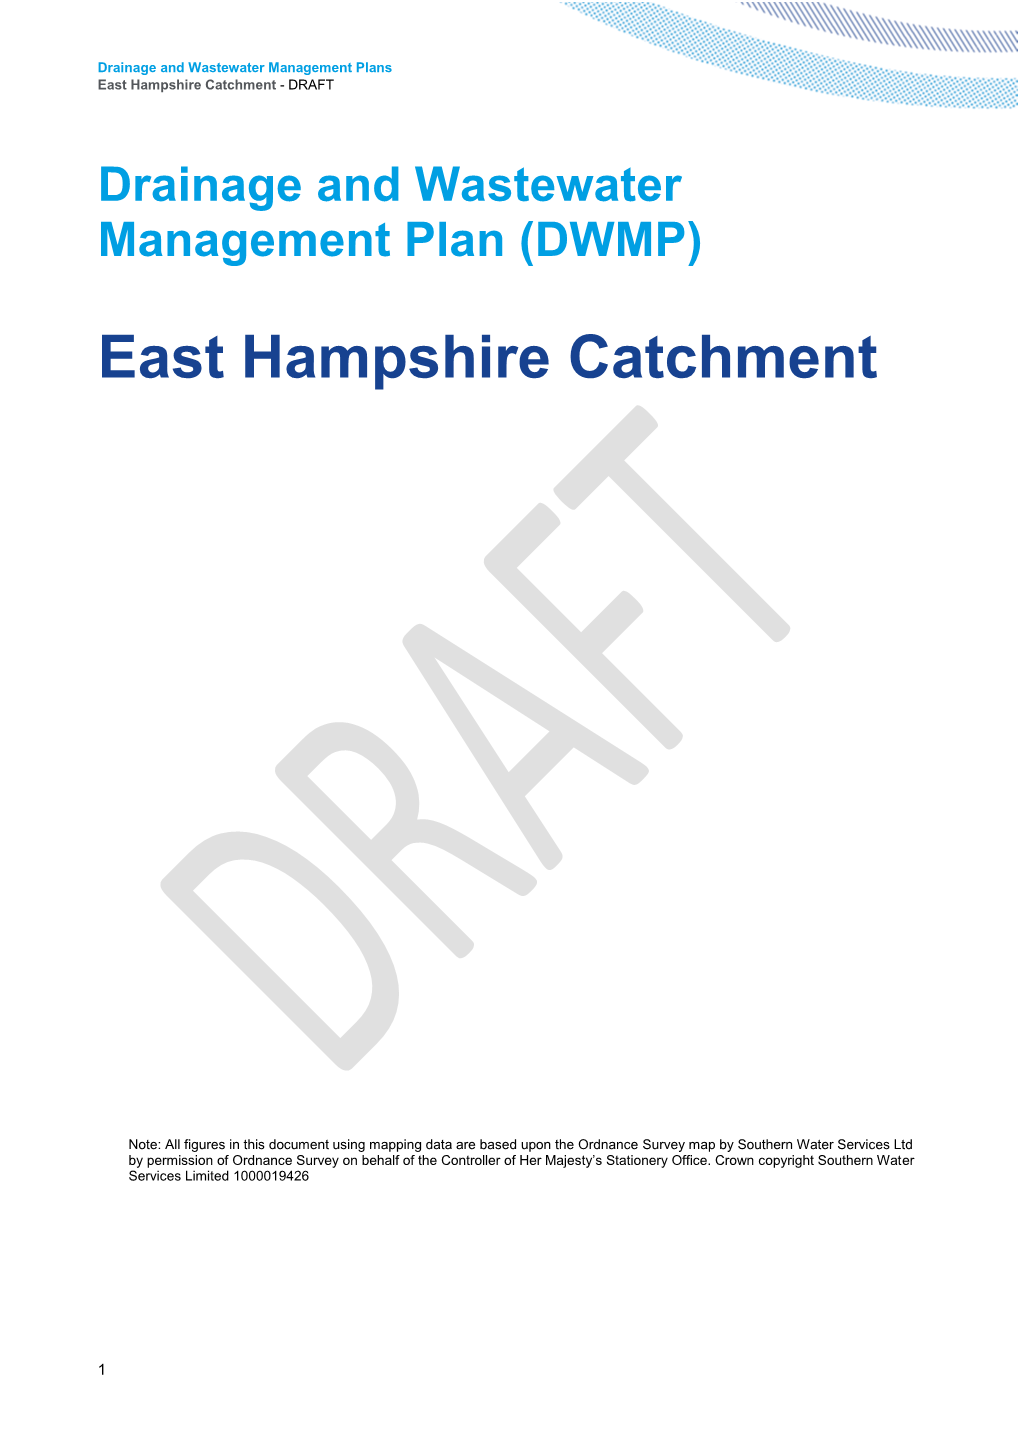 Strategic Context – East Hampshire